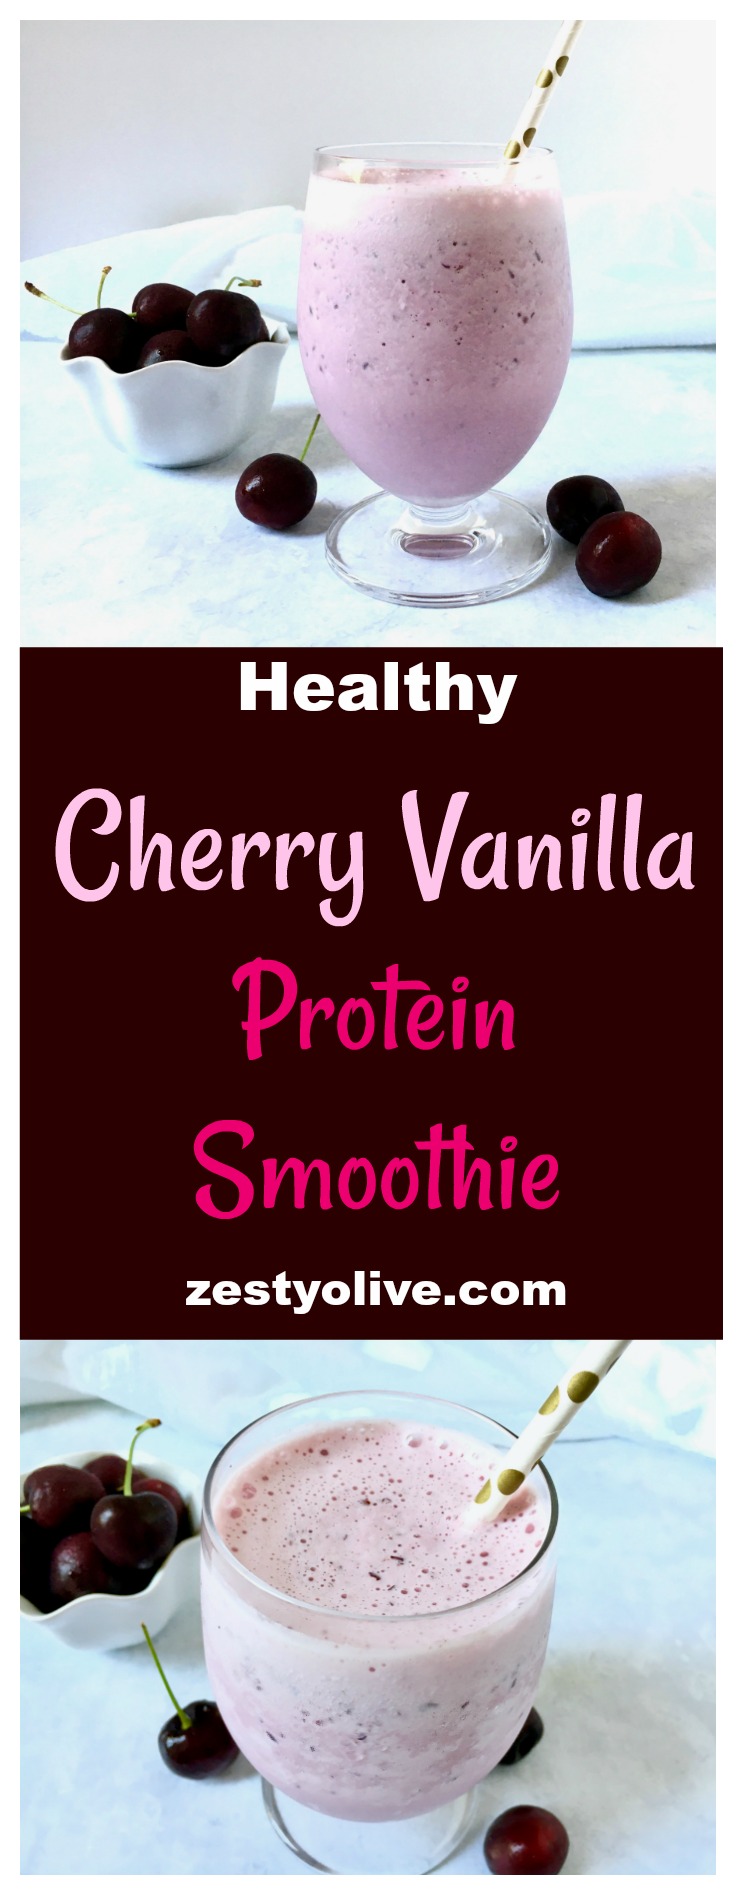 Cherry Vanilla Protein Smoothie